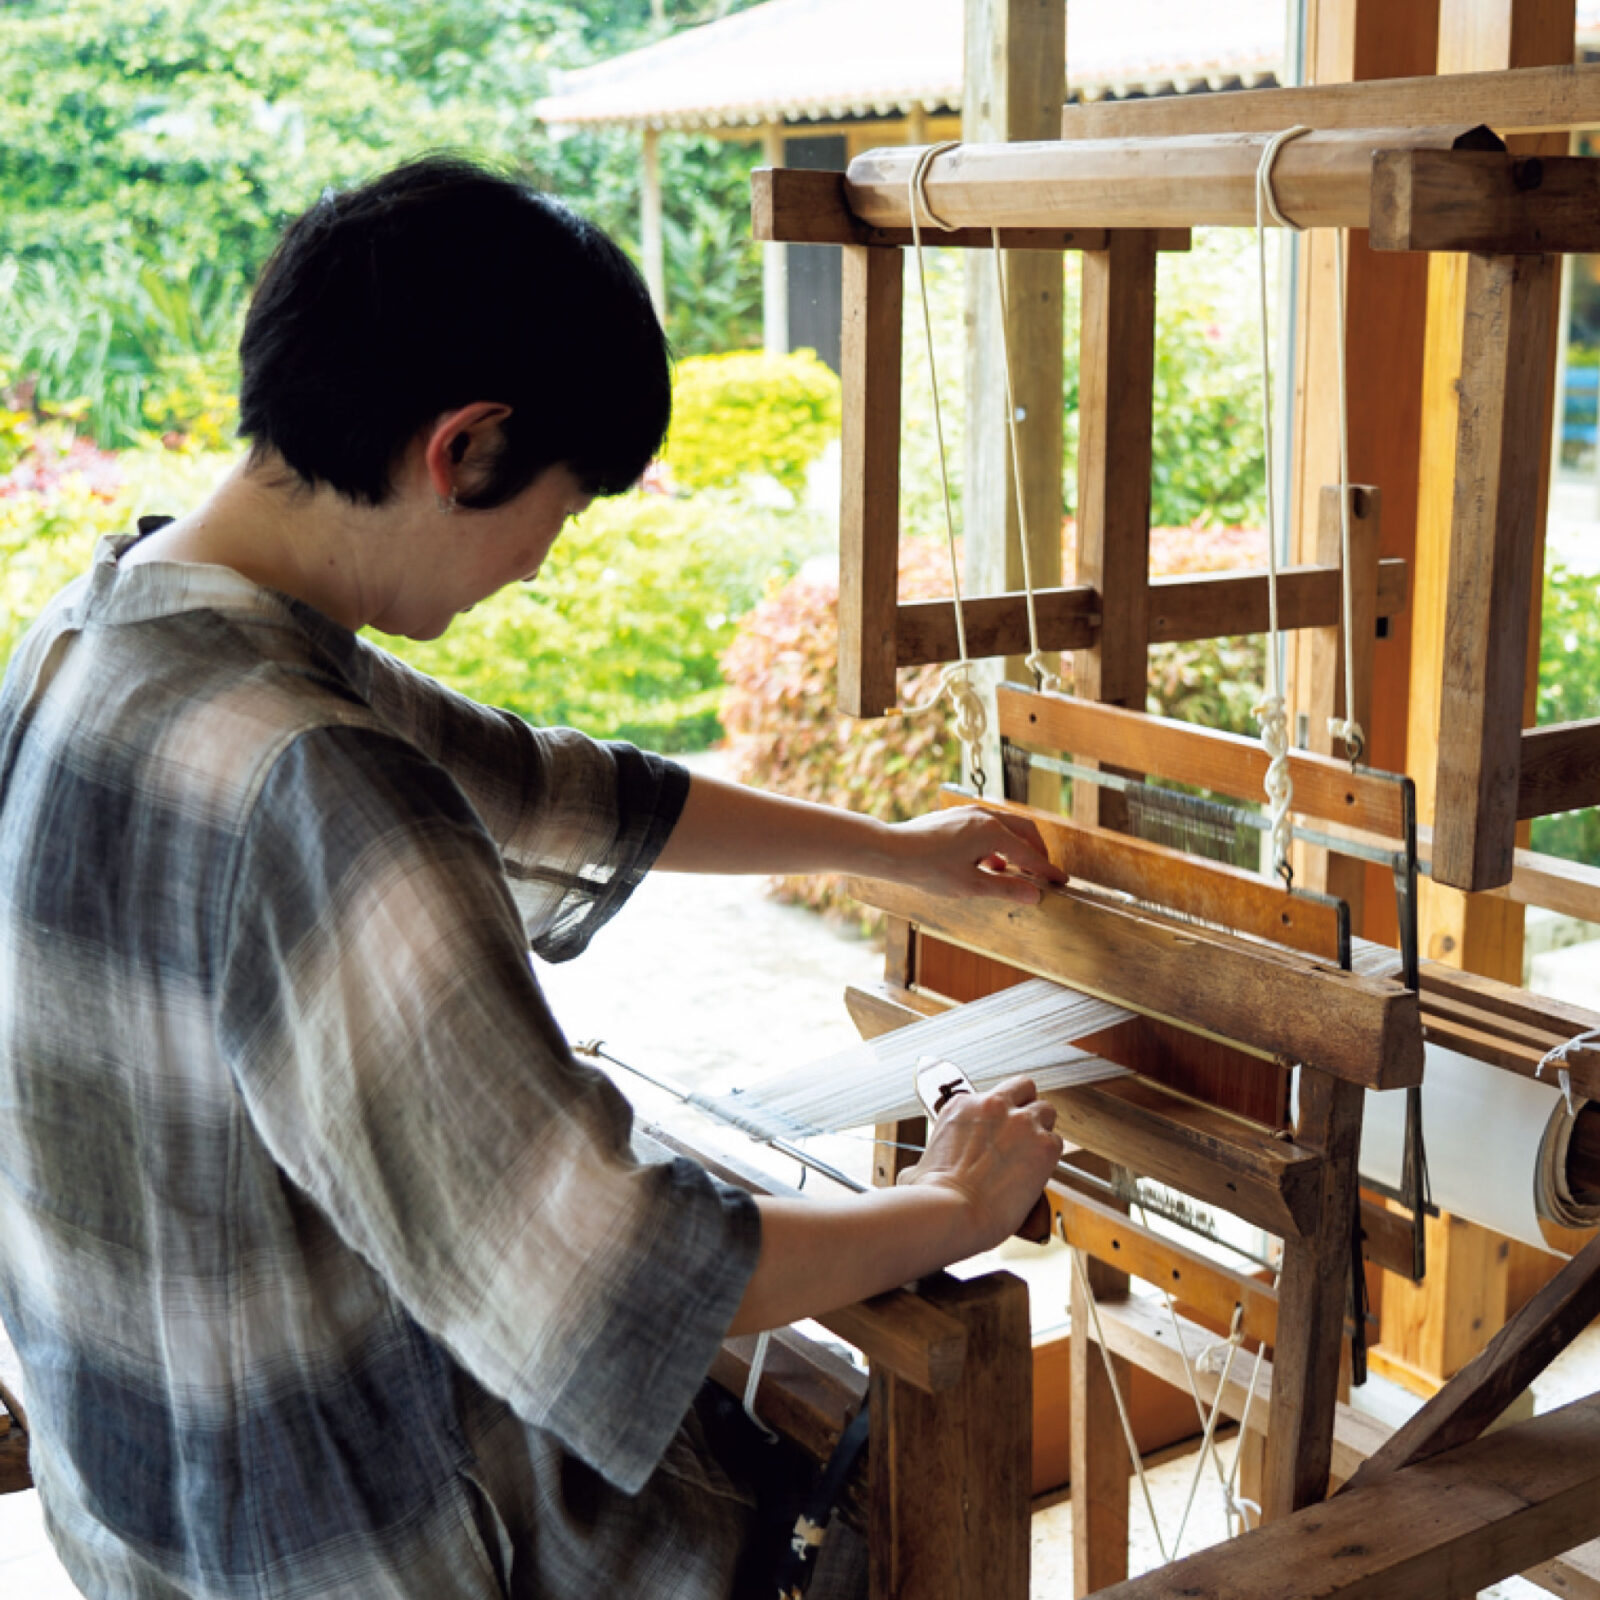 〈星のや〉のアクティビティ「織りあそび」は、足踏み式木製織り機で伝統的なミンサー織りを体験する様子